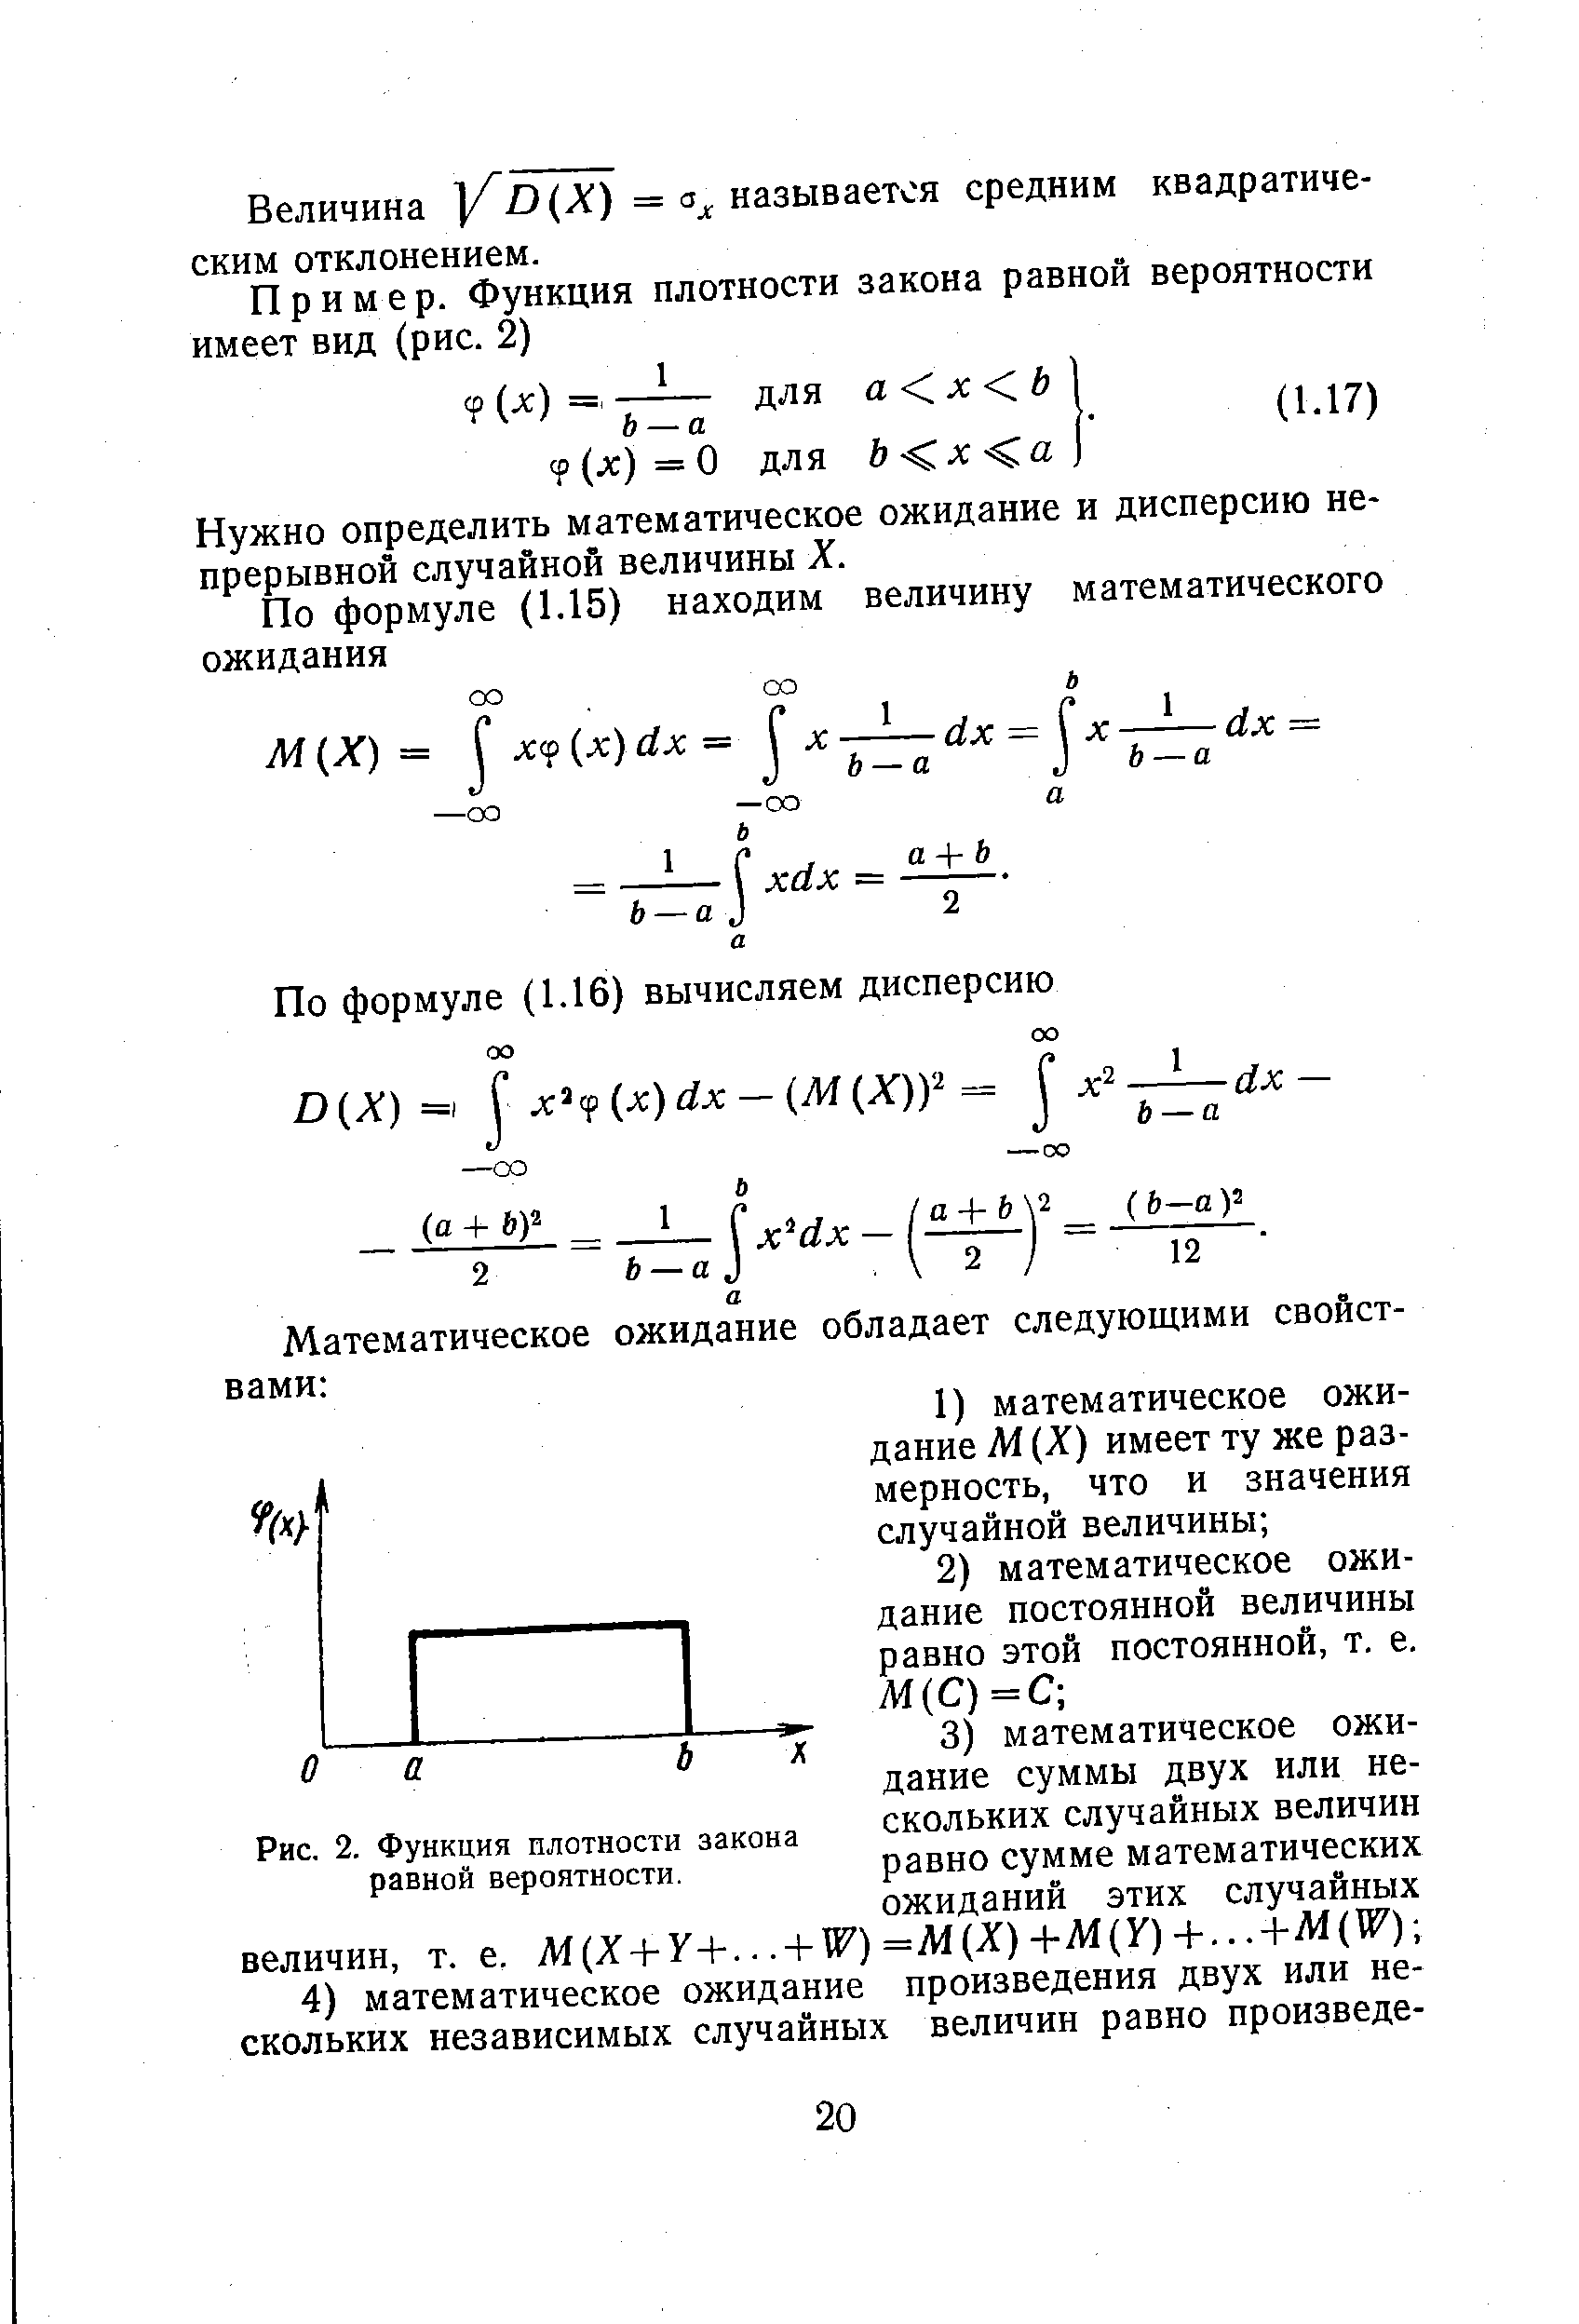 Рис. 2. Функция плотности закона равной вероятности.
